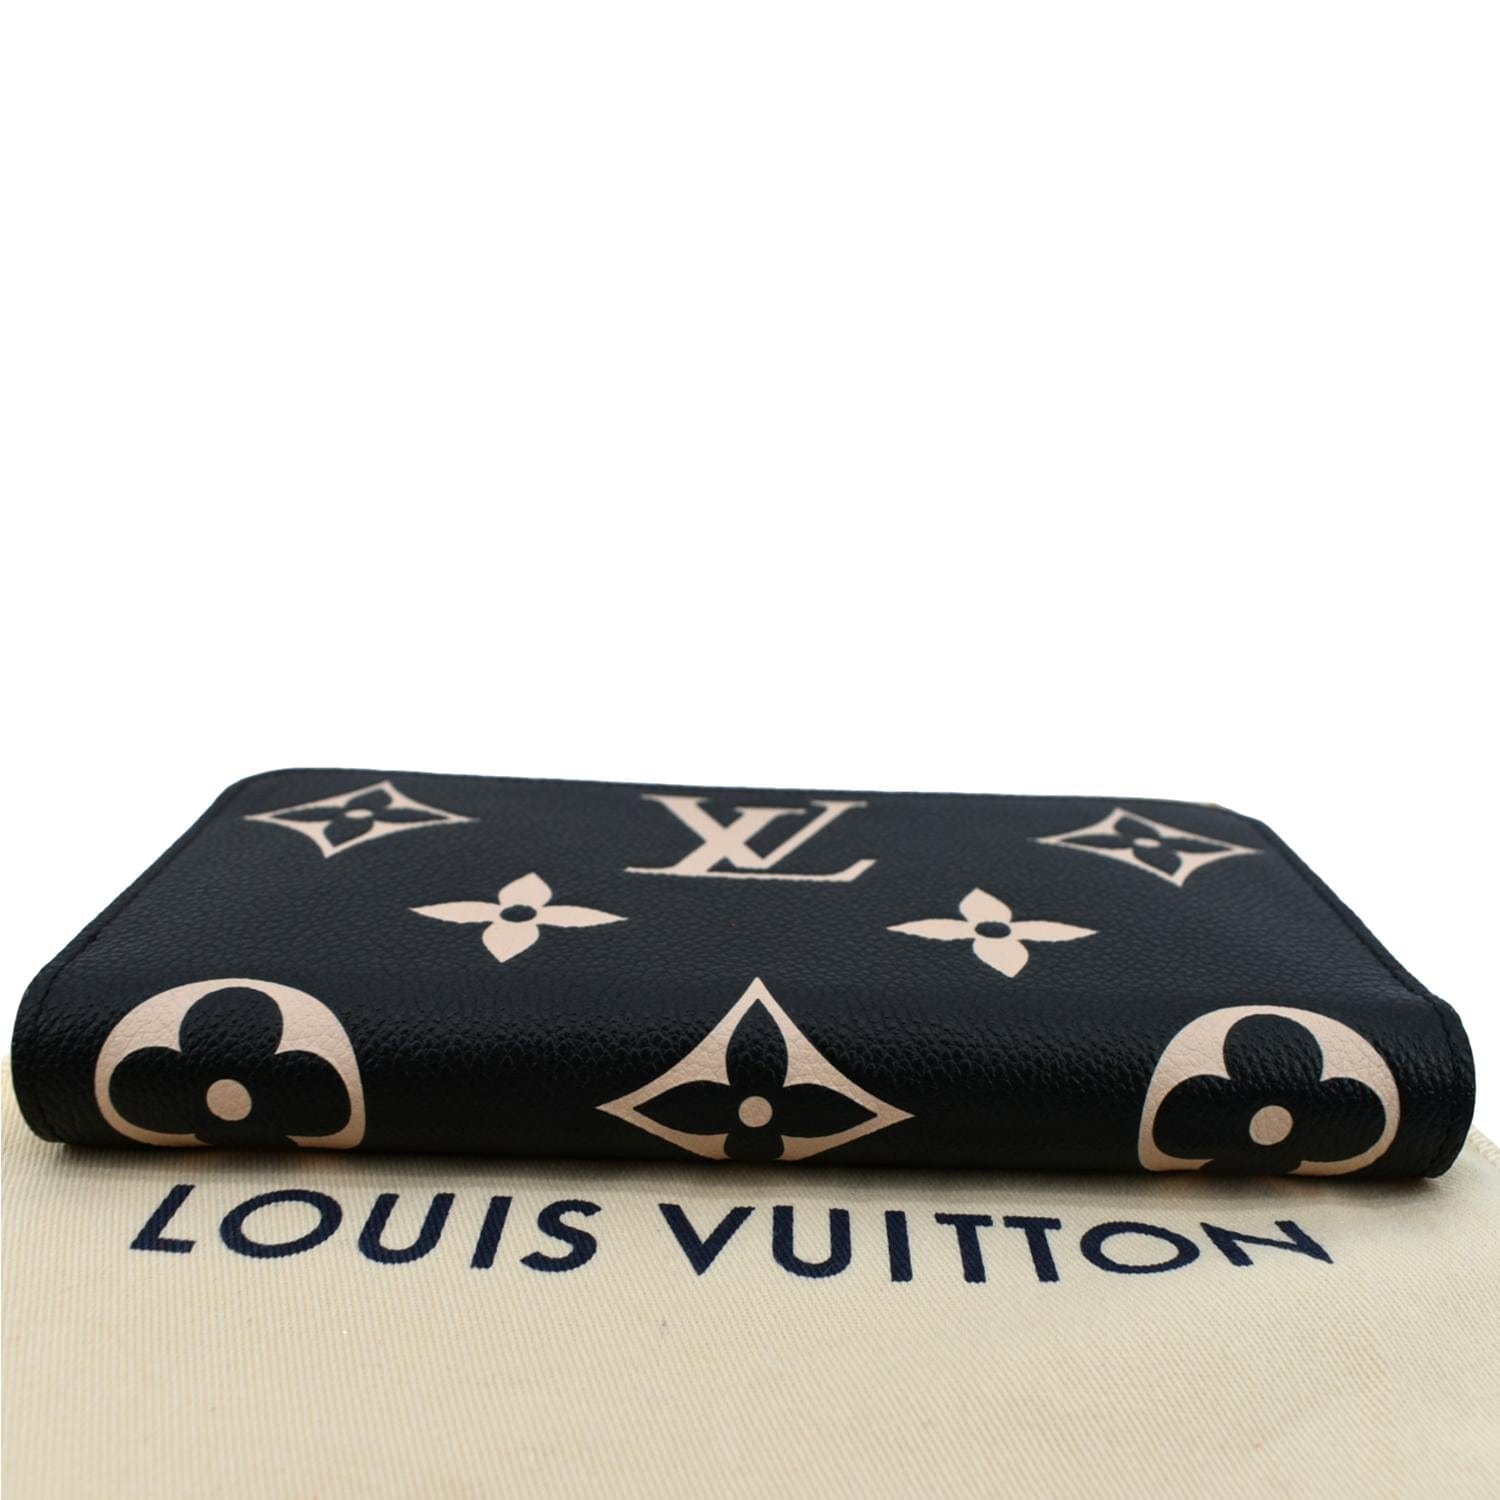 🍀NEW LOUIS VUITTON ZIPPY WALLET Bicolor Monogram Empreinte Leather  AUTHENTIC